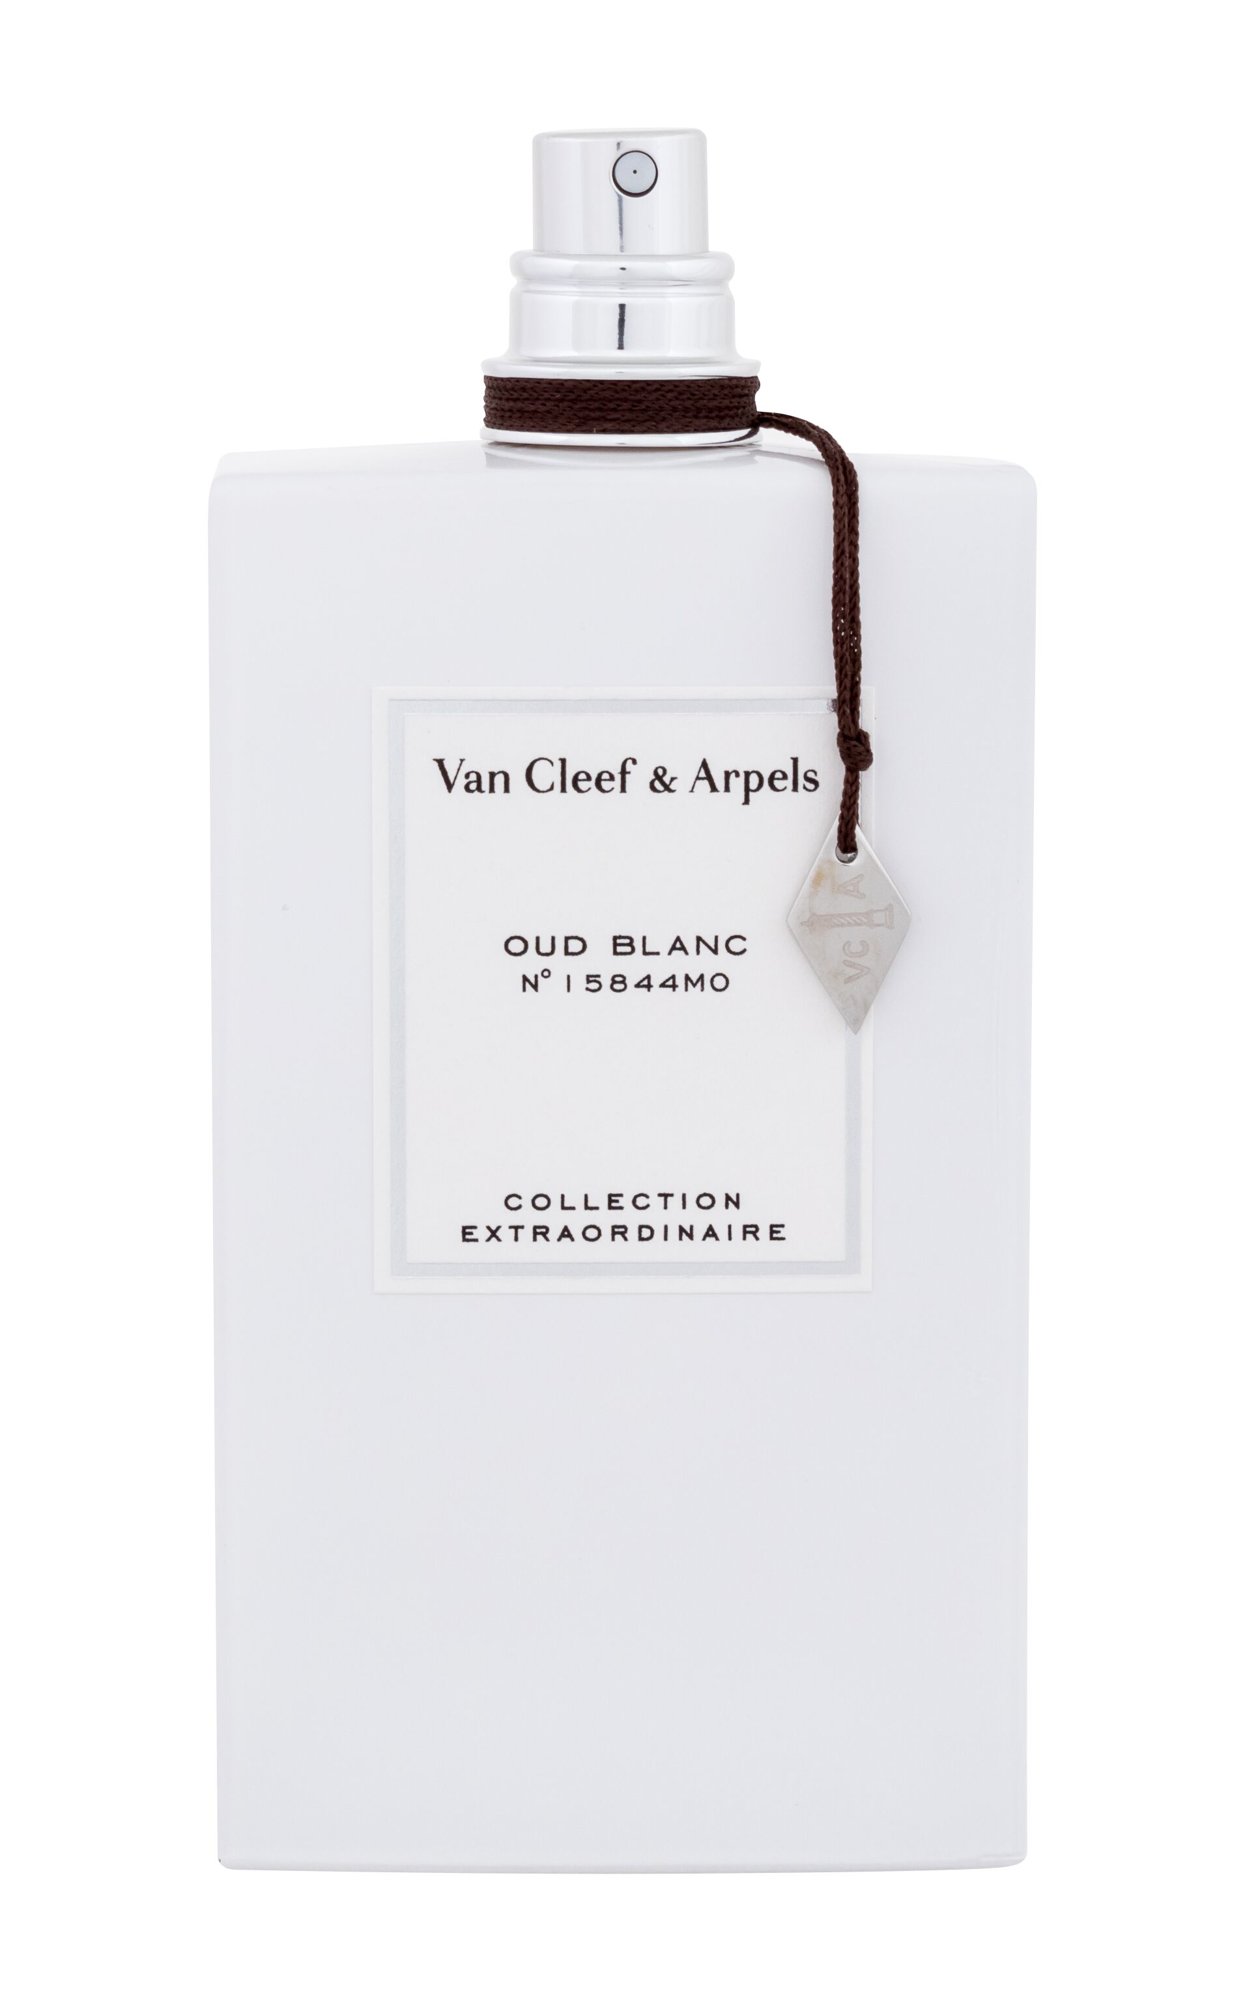 Van Cleef & Arpels Collection Extraordinaire Oud Blanc 20 ml NIŠINIAI kvepalų mėginukas (atomaizeris) Unisex EDP